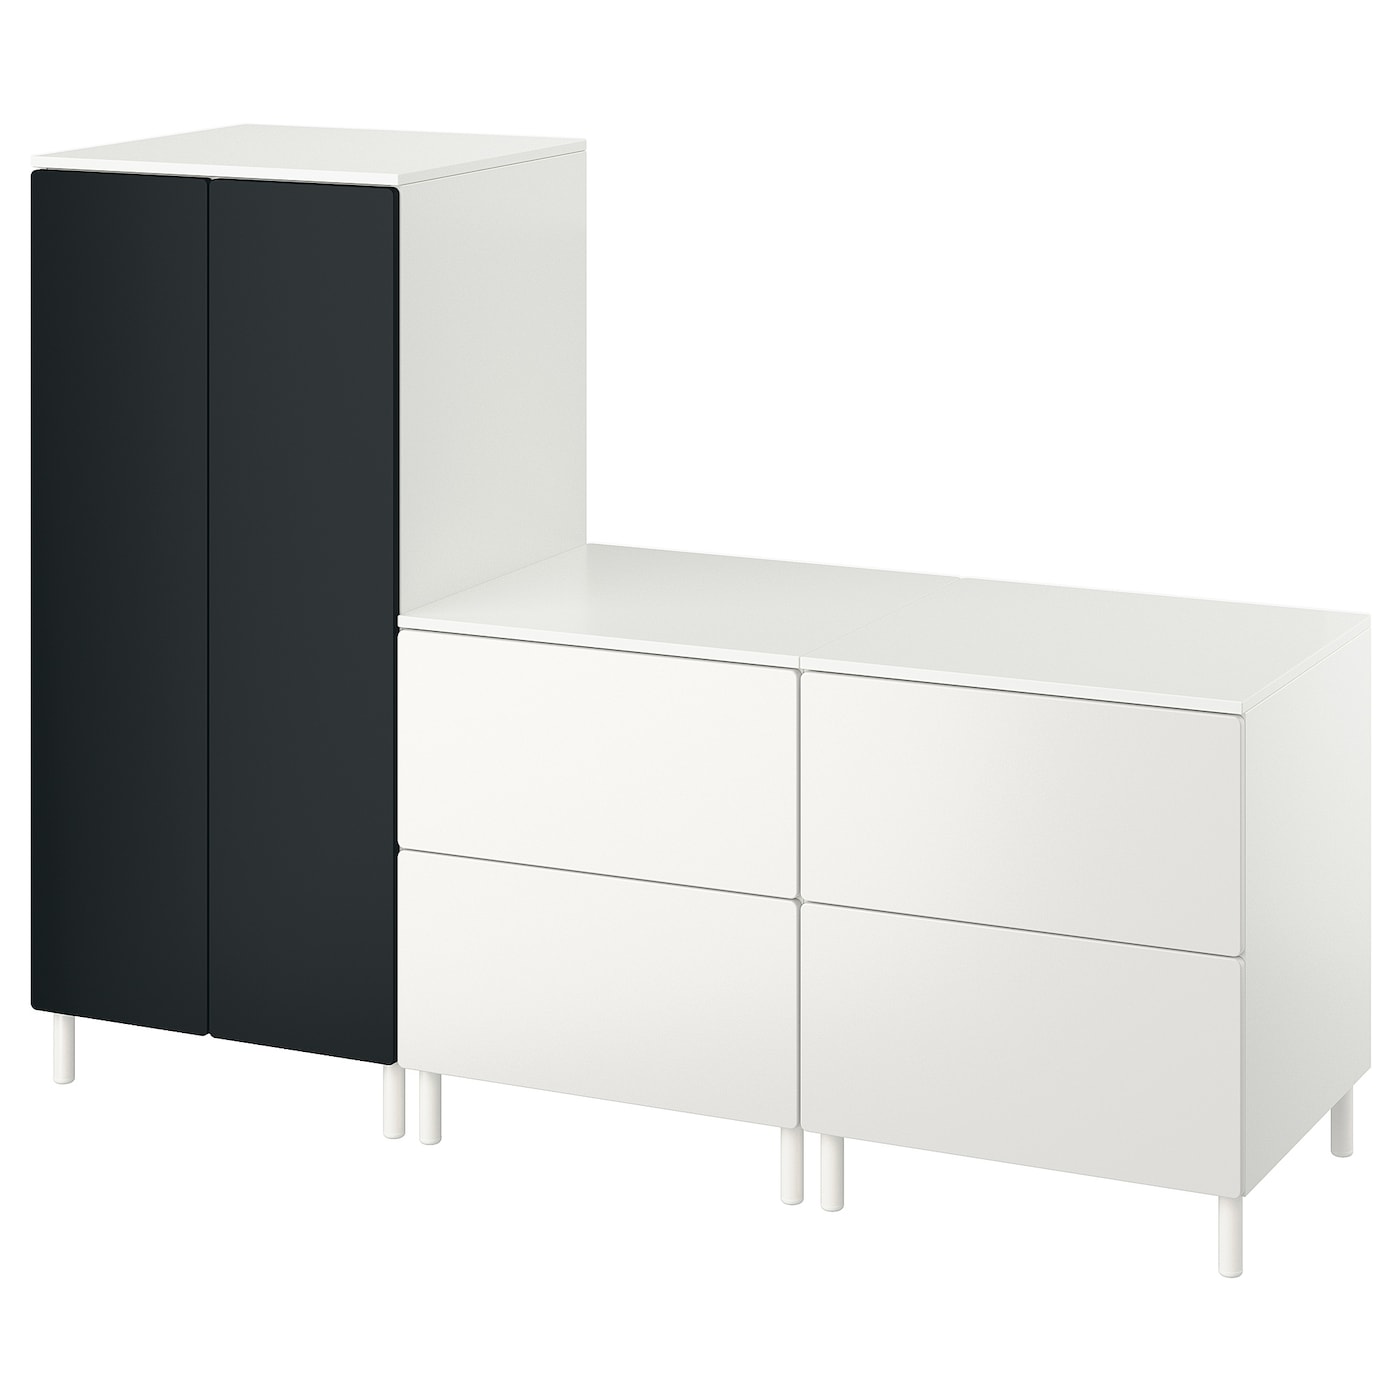 Детская гардеробная комбинация - IKEA PLATSA SMÅSTAD/SMASTAD, 180x57x133см, белый/черный, ПЛАТСА СМОСТАД ИКЕА